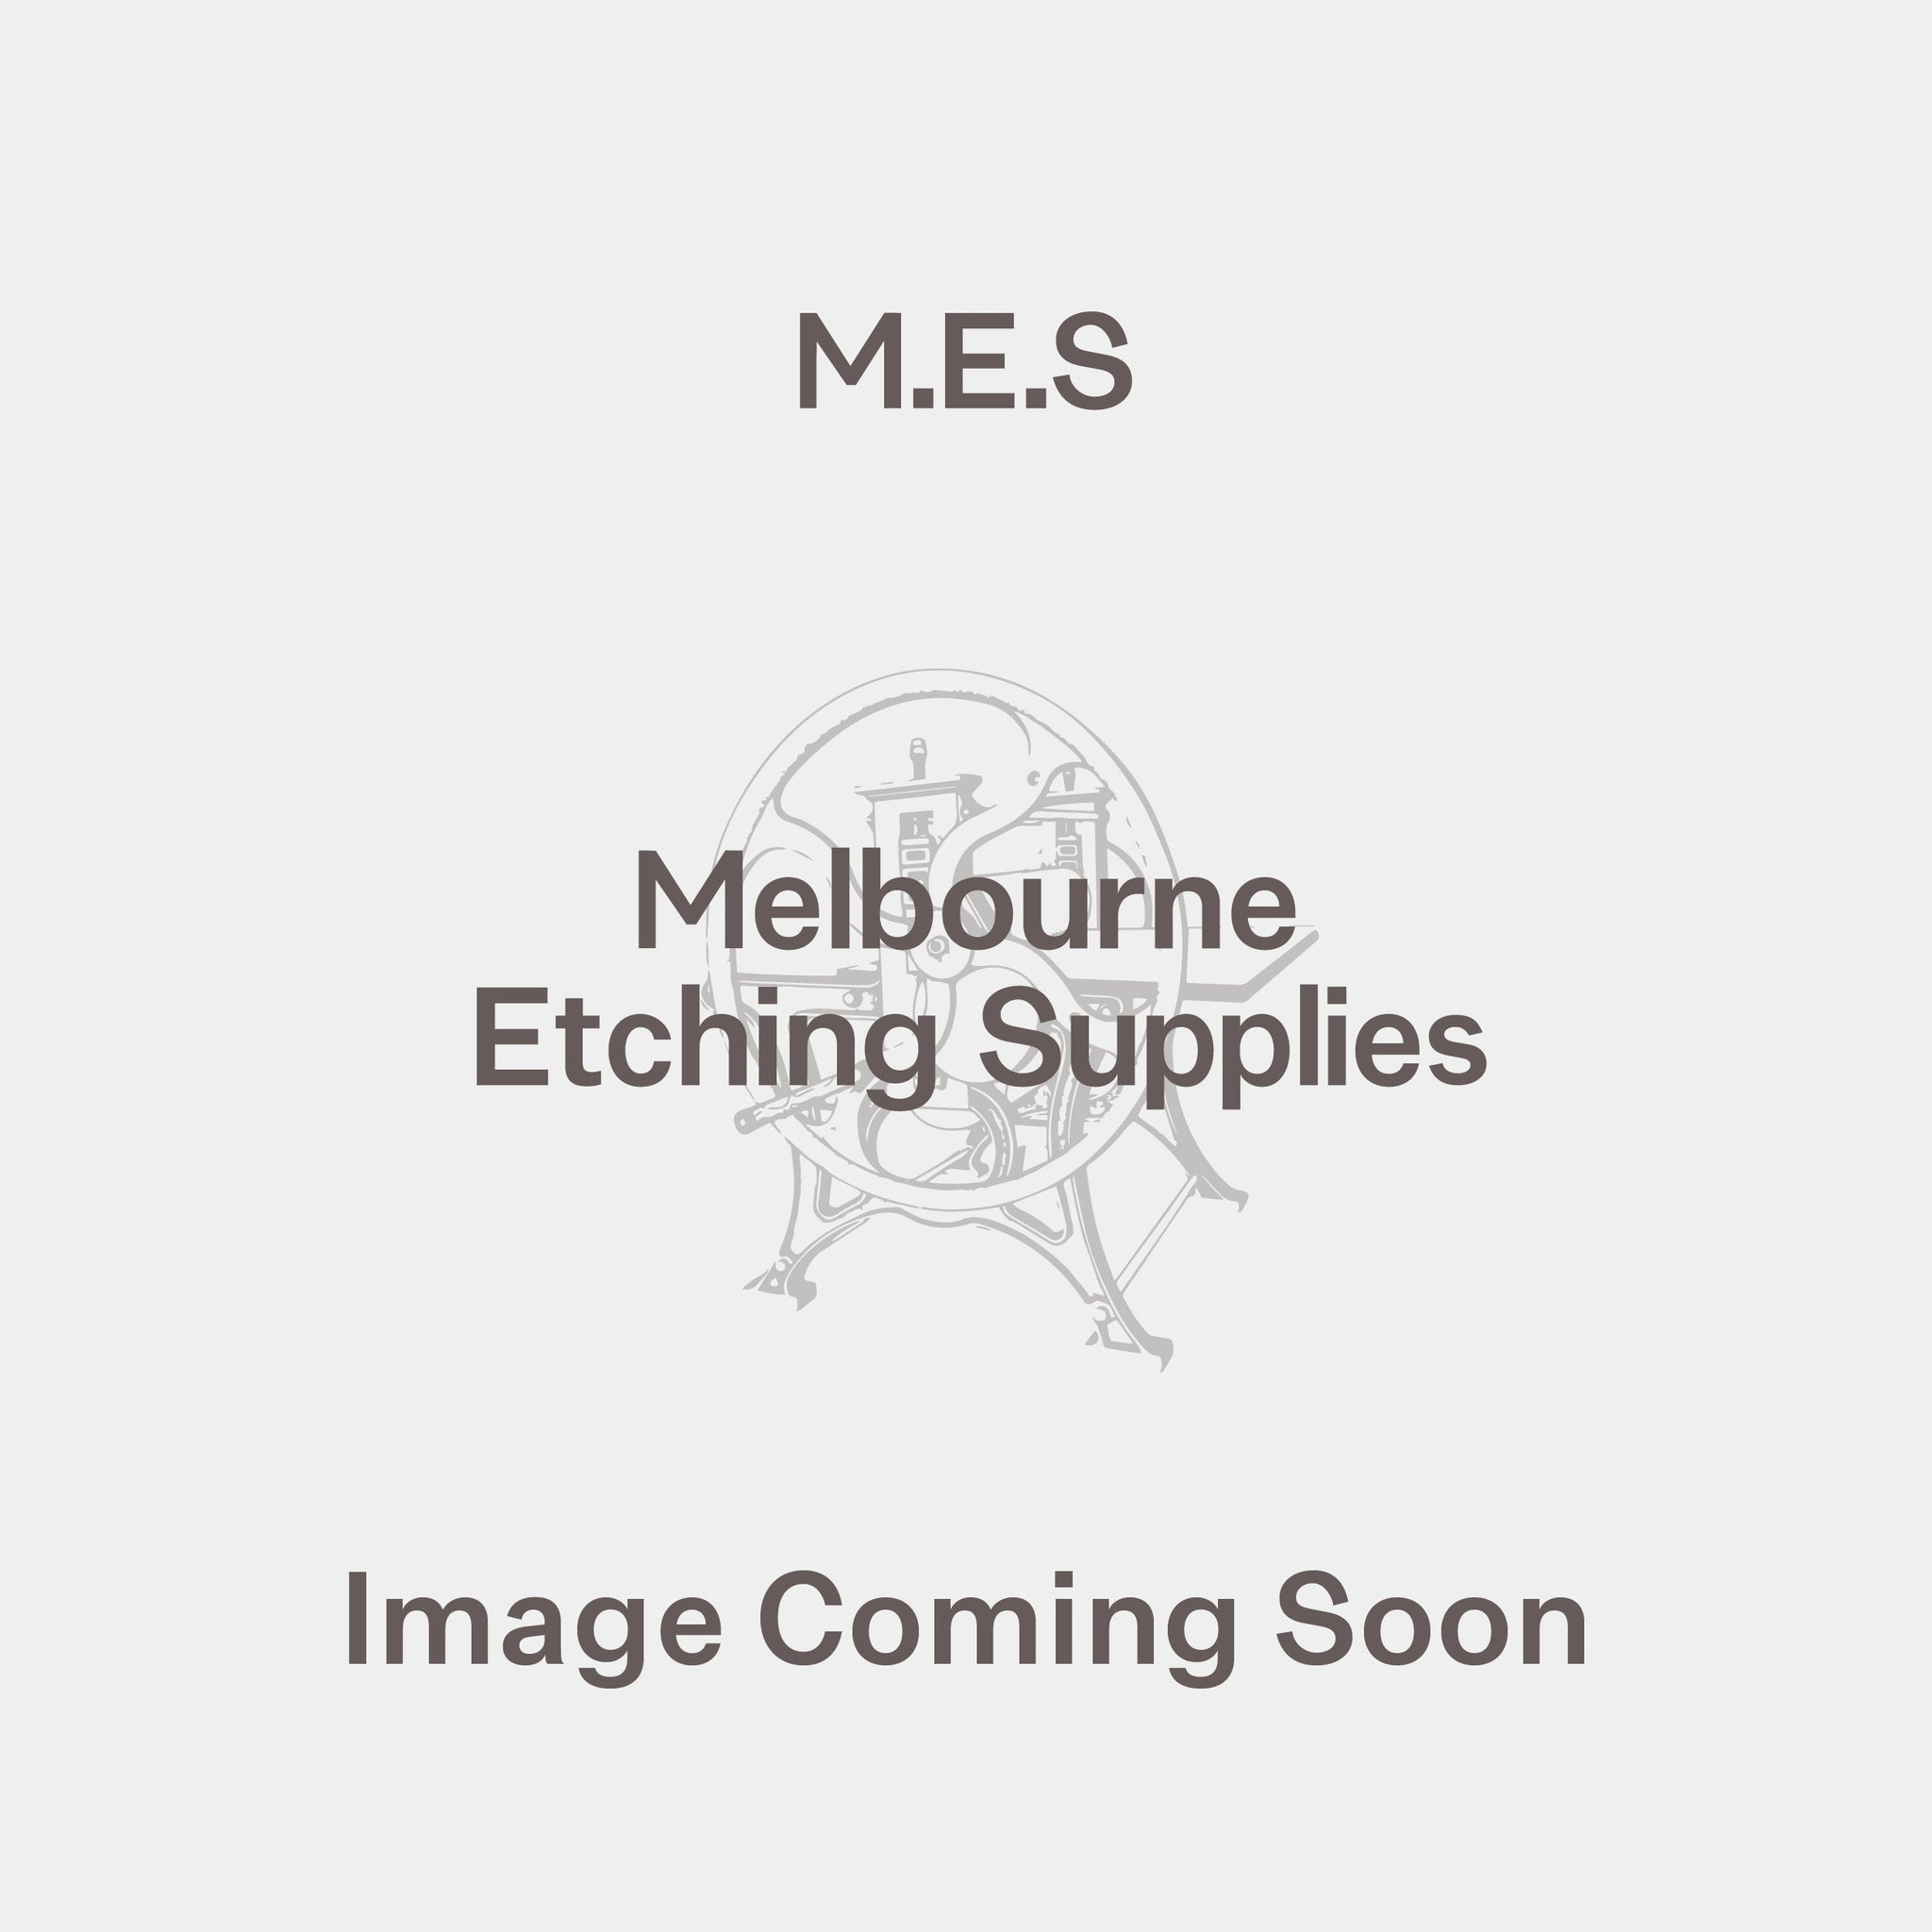 Polycotton Unprimed 12oz, 2.2m wide (price per metre) - Melbourne Etching Supplies